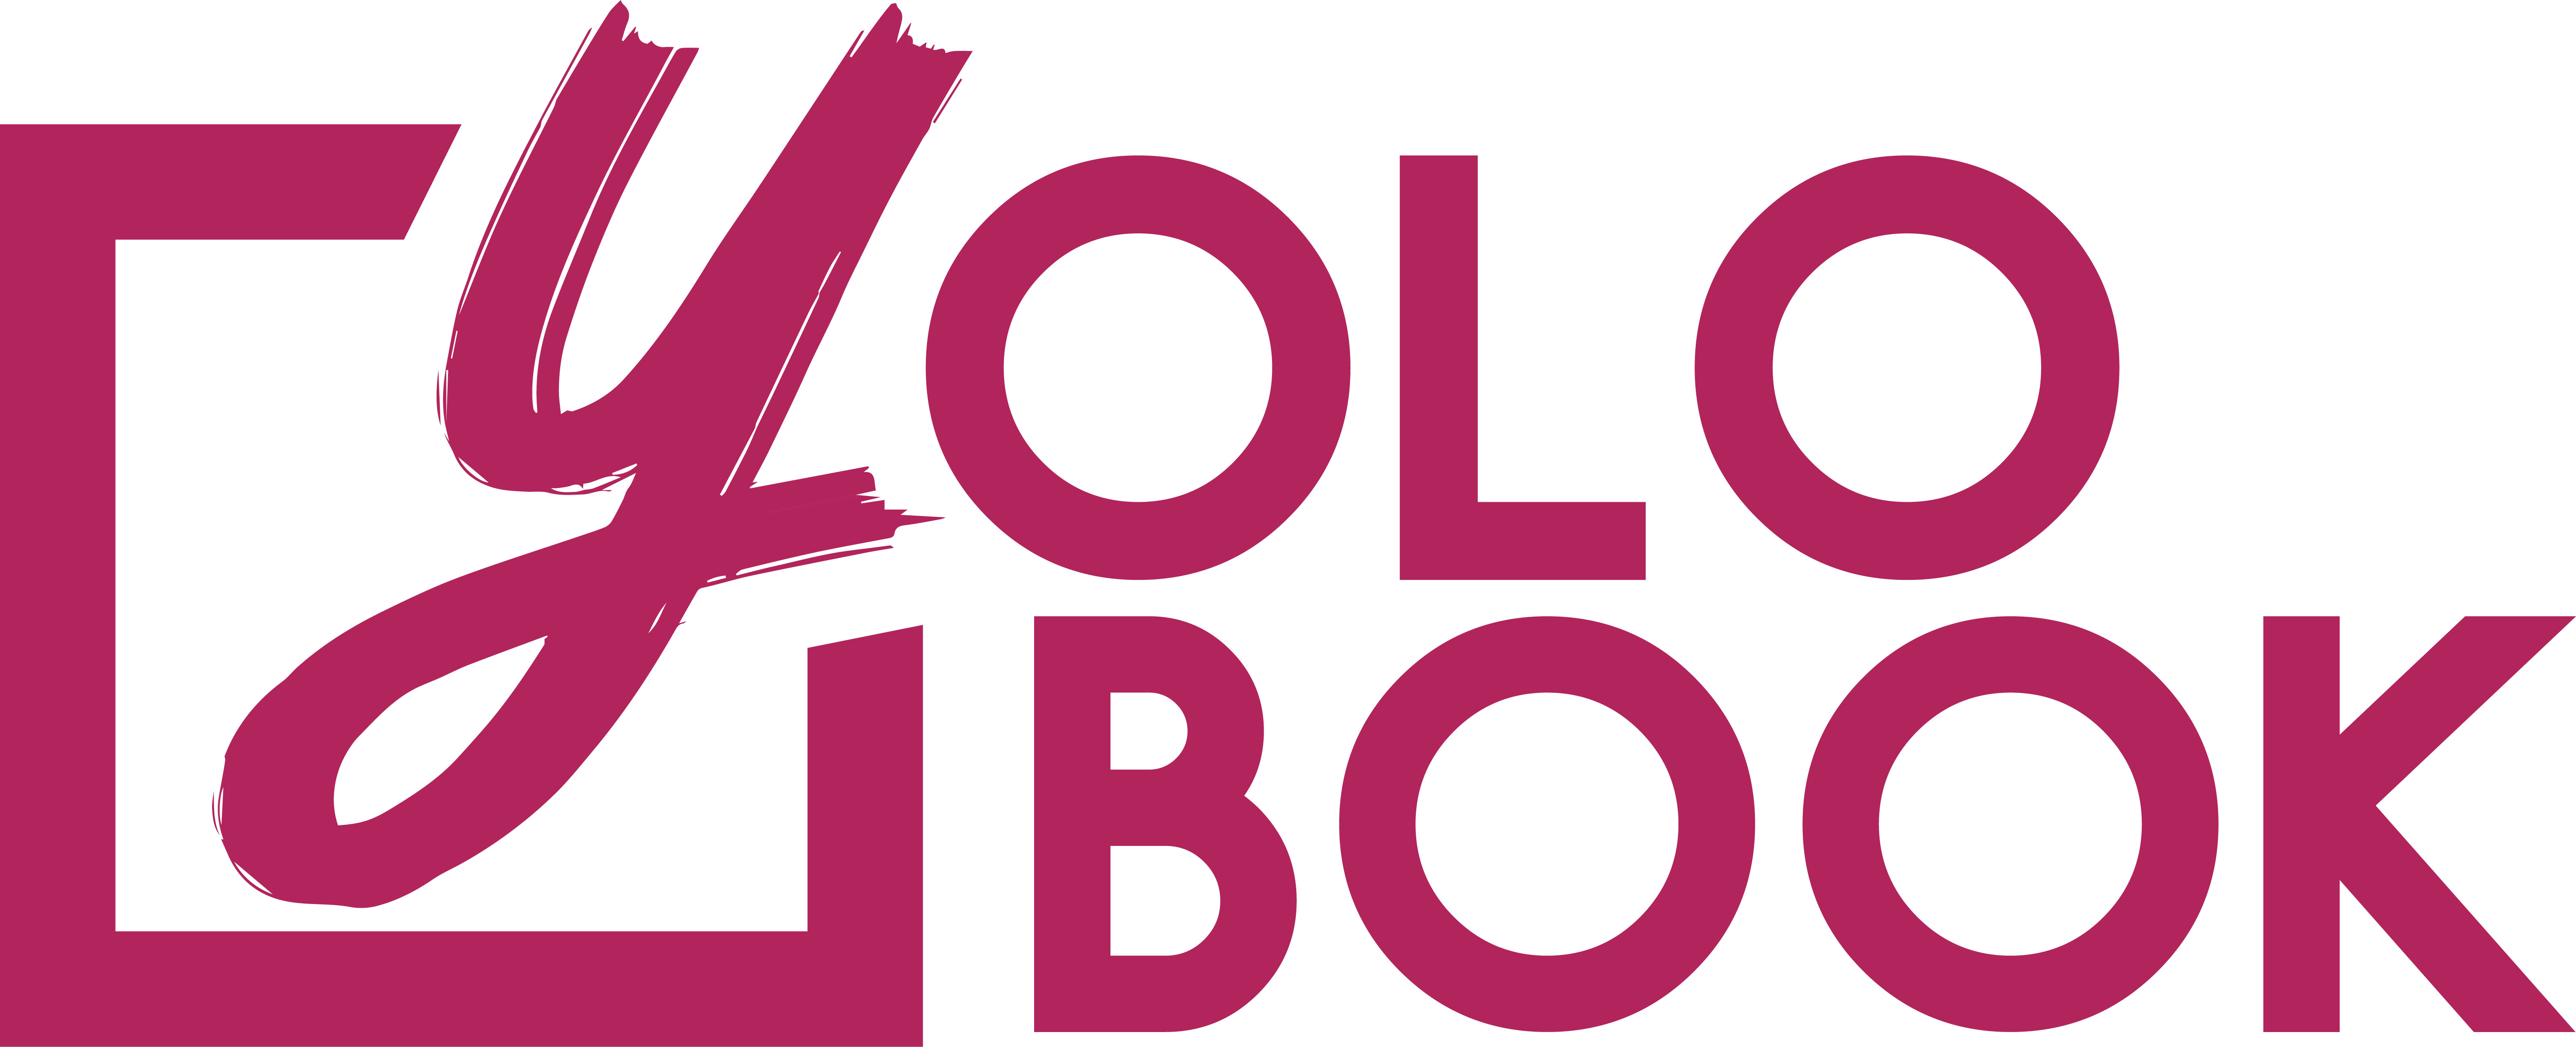 YoloBook